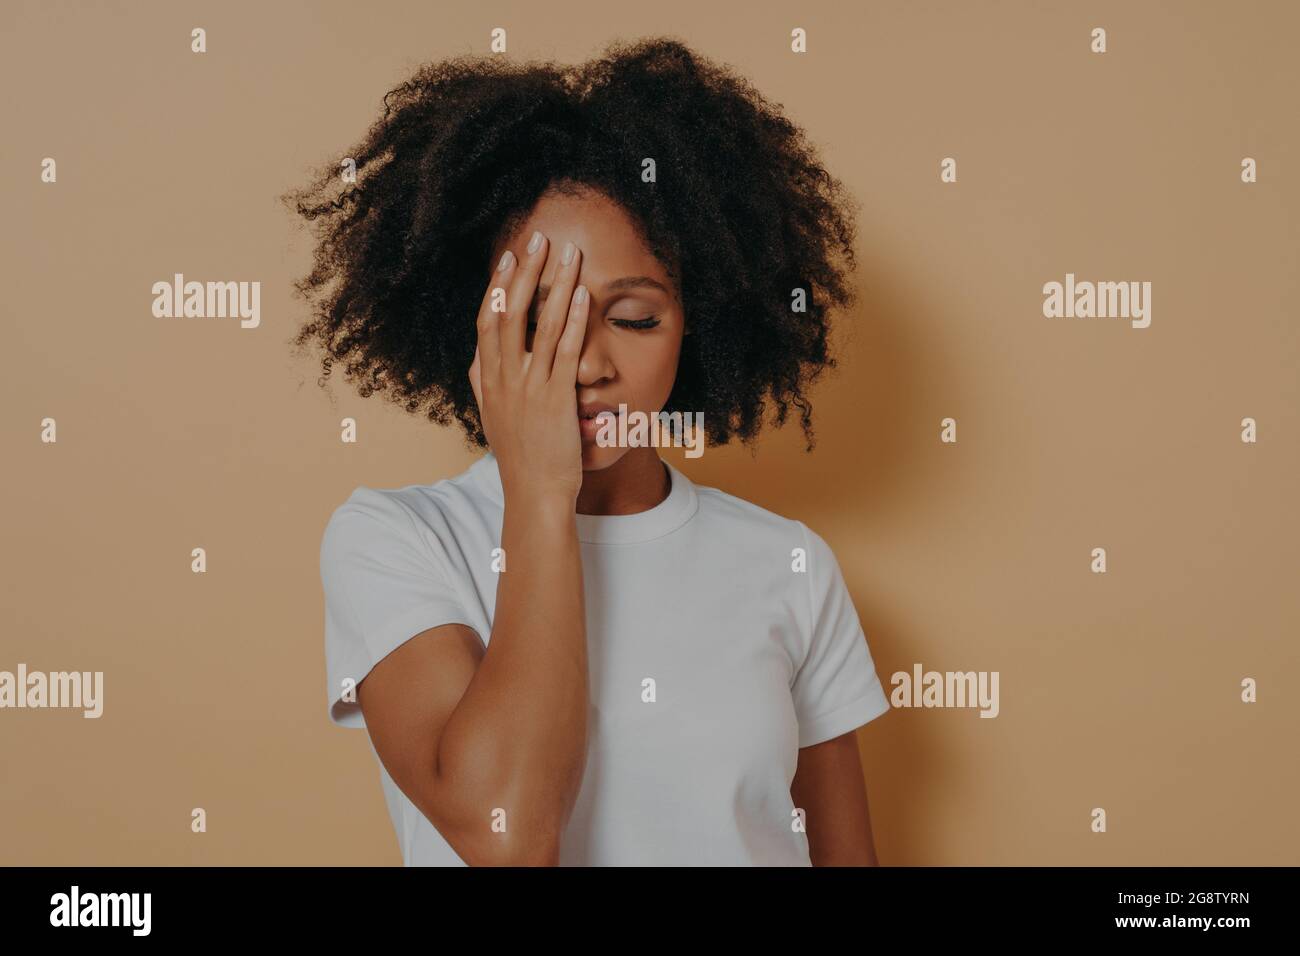 Pelle scura femmina che ricopre la faccia con la mano e sensazione di ansia o depressione contro la parete beige Foto Stock